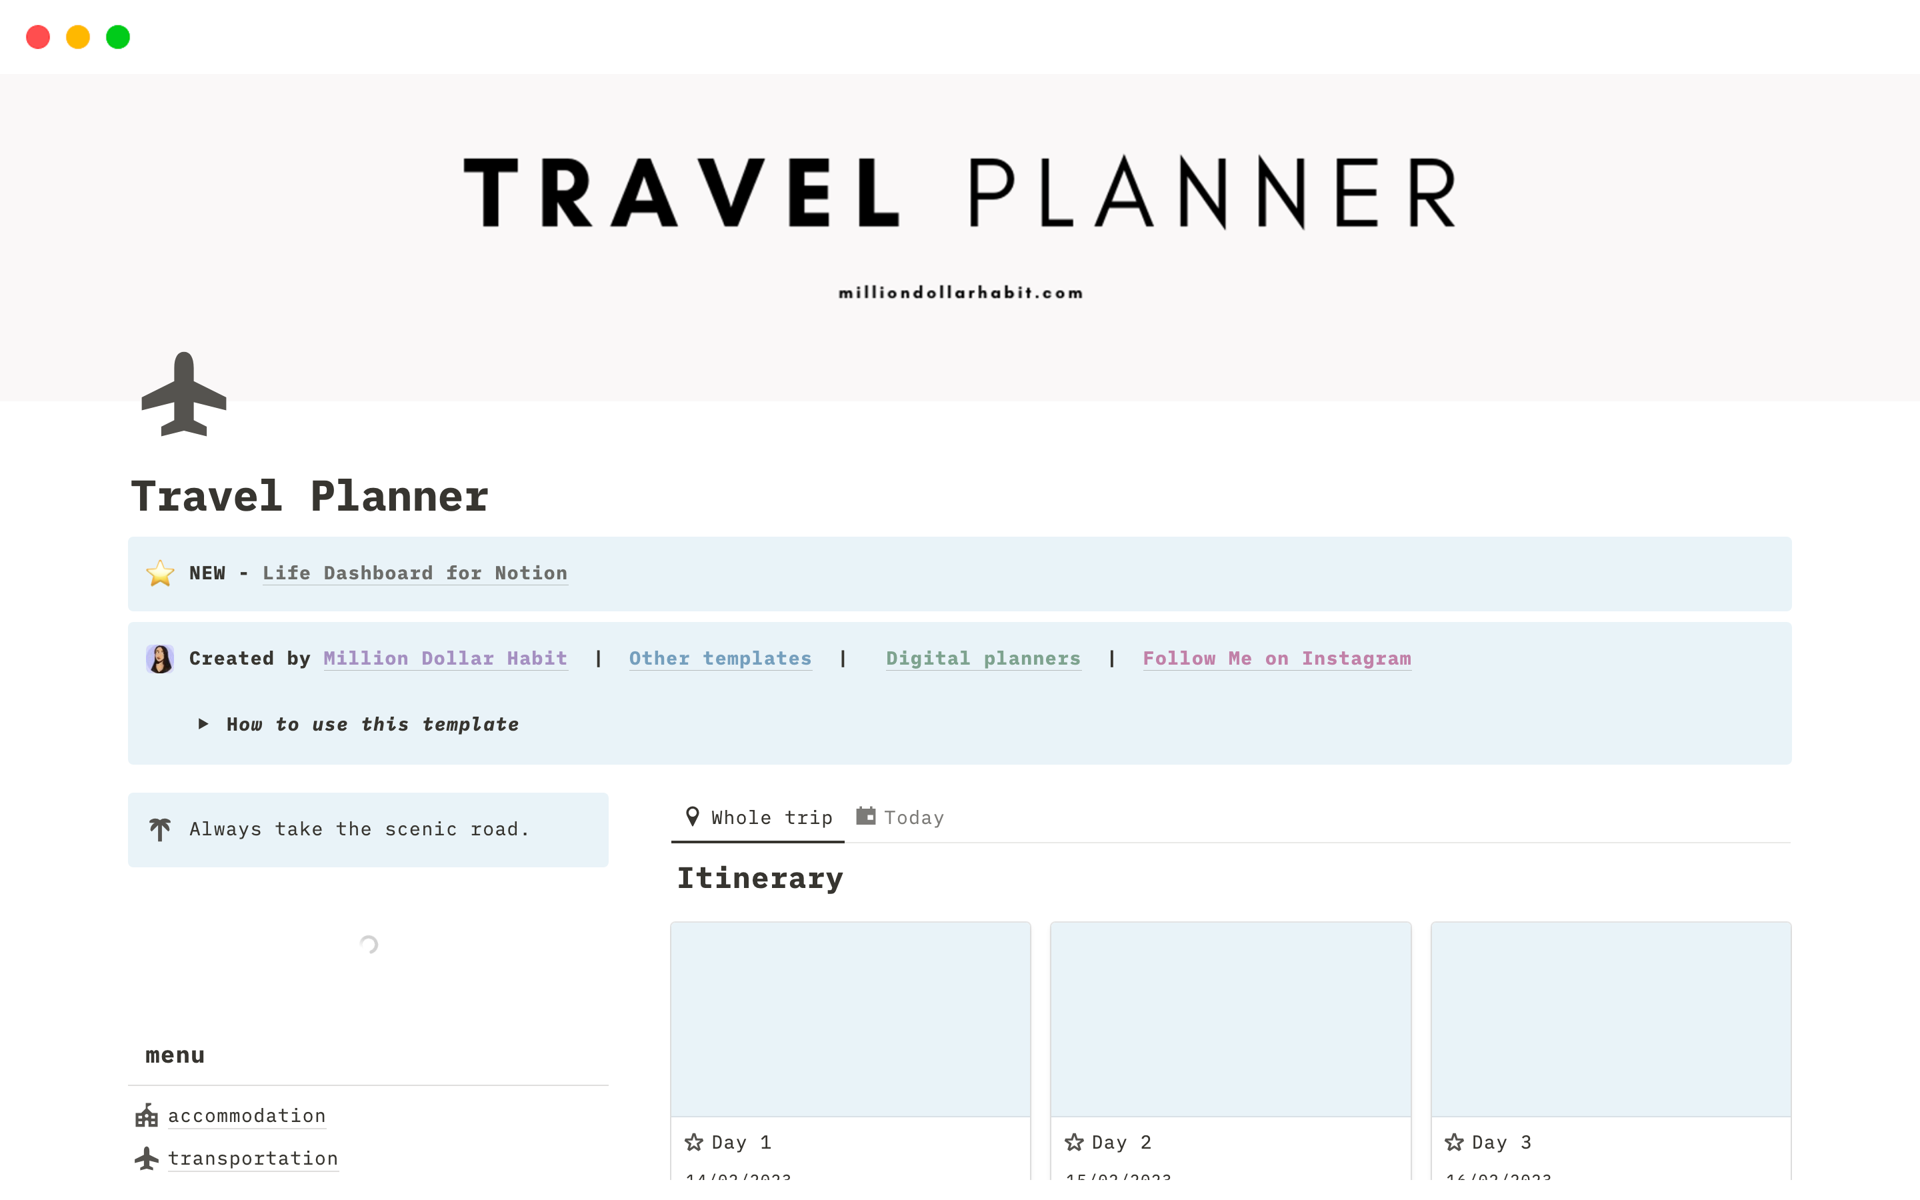 Aperçu du modèle de Travel Planner